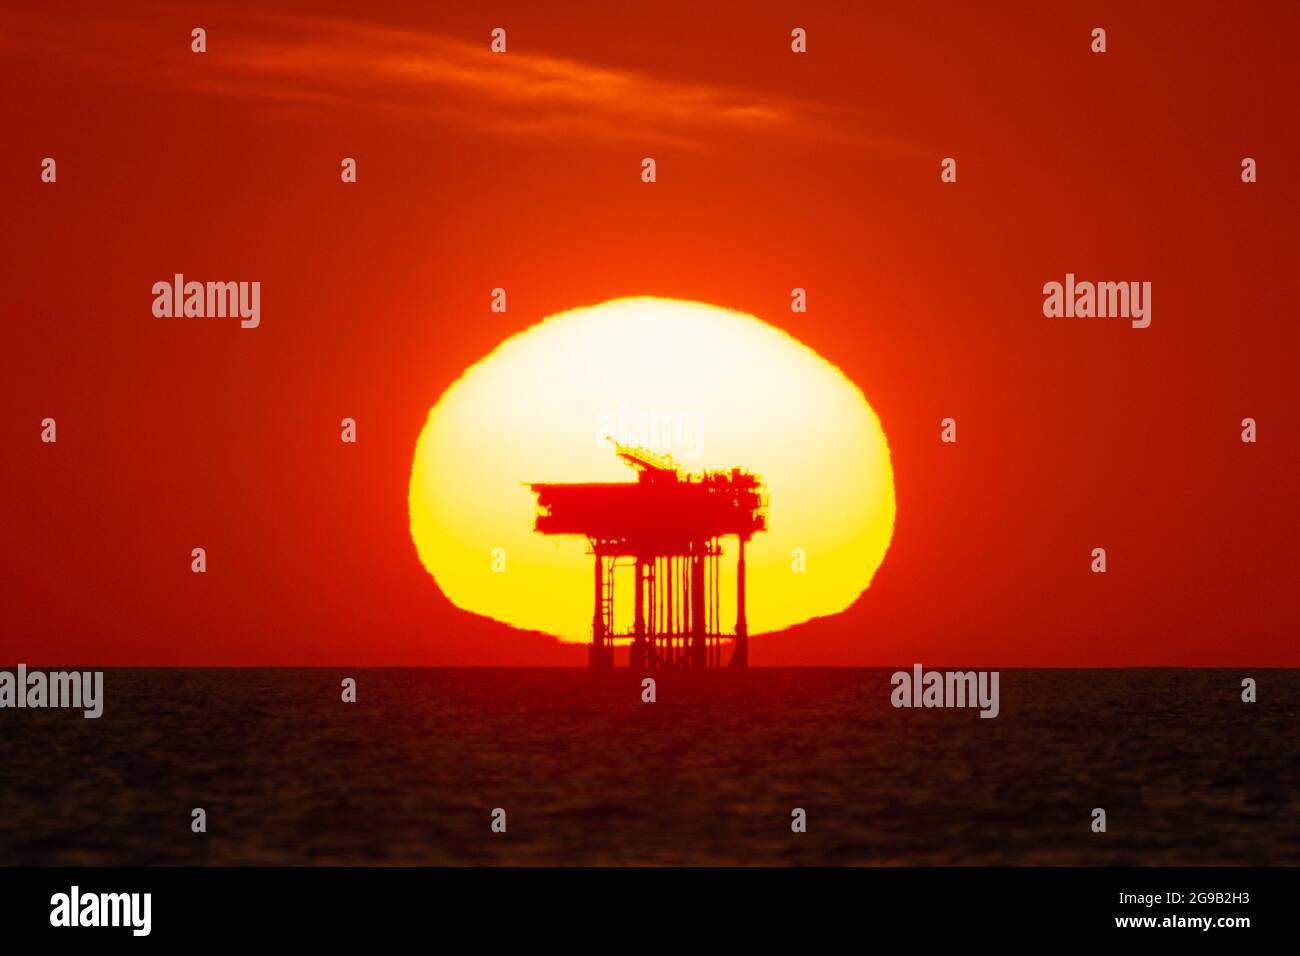 Blick auf den Sonnenuntergang hinter einer Offshore-Öl-/Gas-Plattform oder Bohrinsel auf See. Konzept oder Thema der fossilen Brennstoffe, Petrochemie, Sunset Industrie Stockfoto